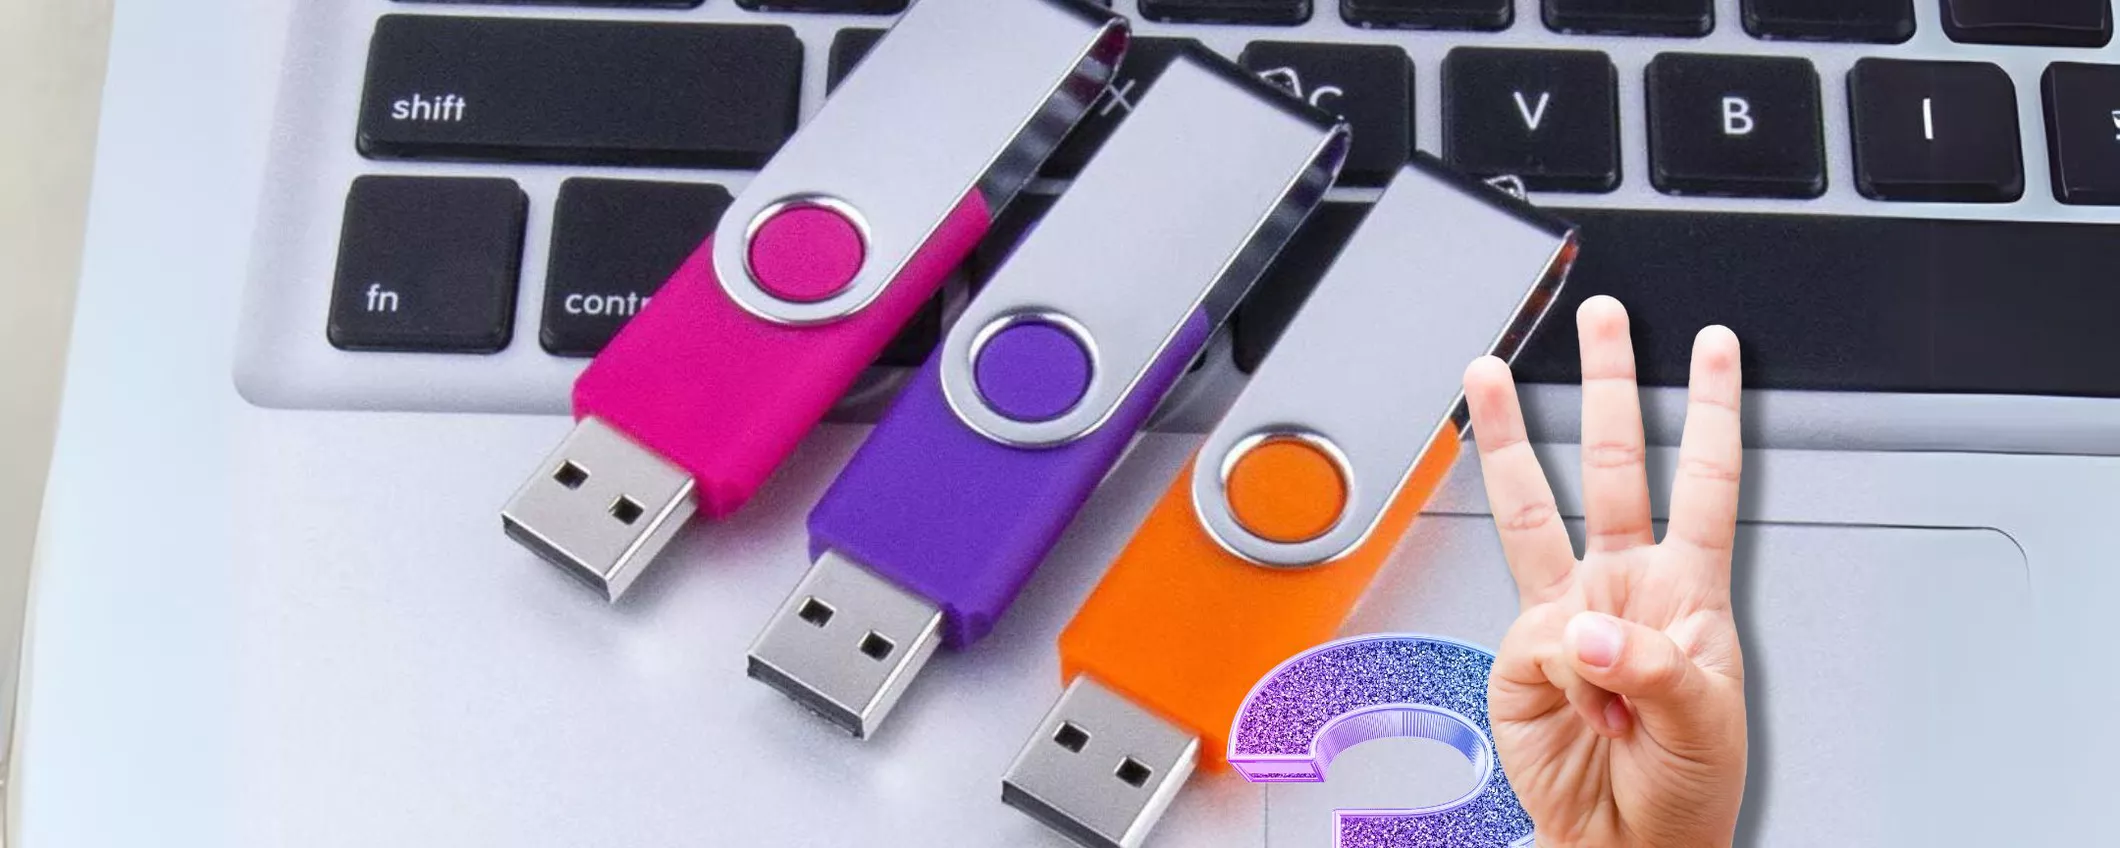 Super Offerta su Amazon: Trio di Chiavette USB da 32GB a Soli 10,70€!